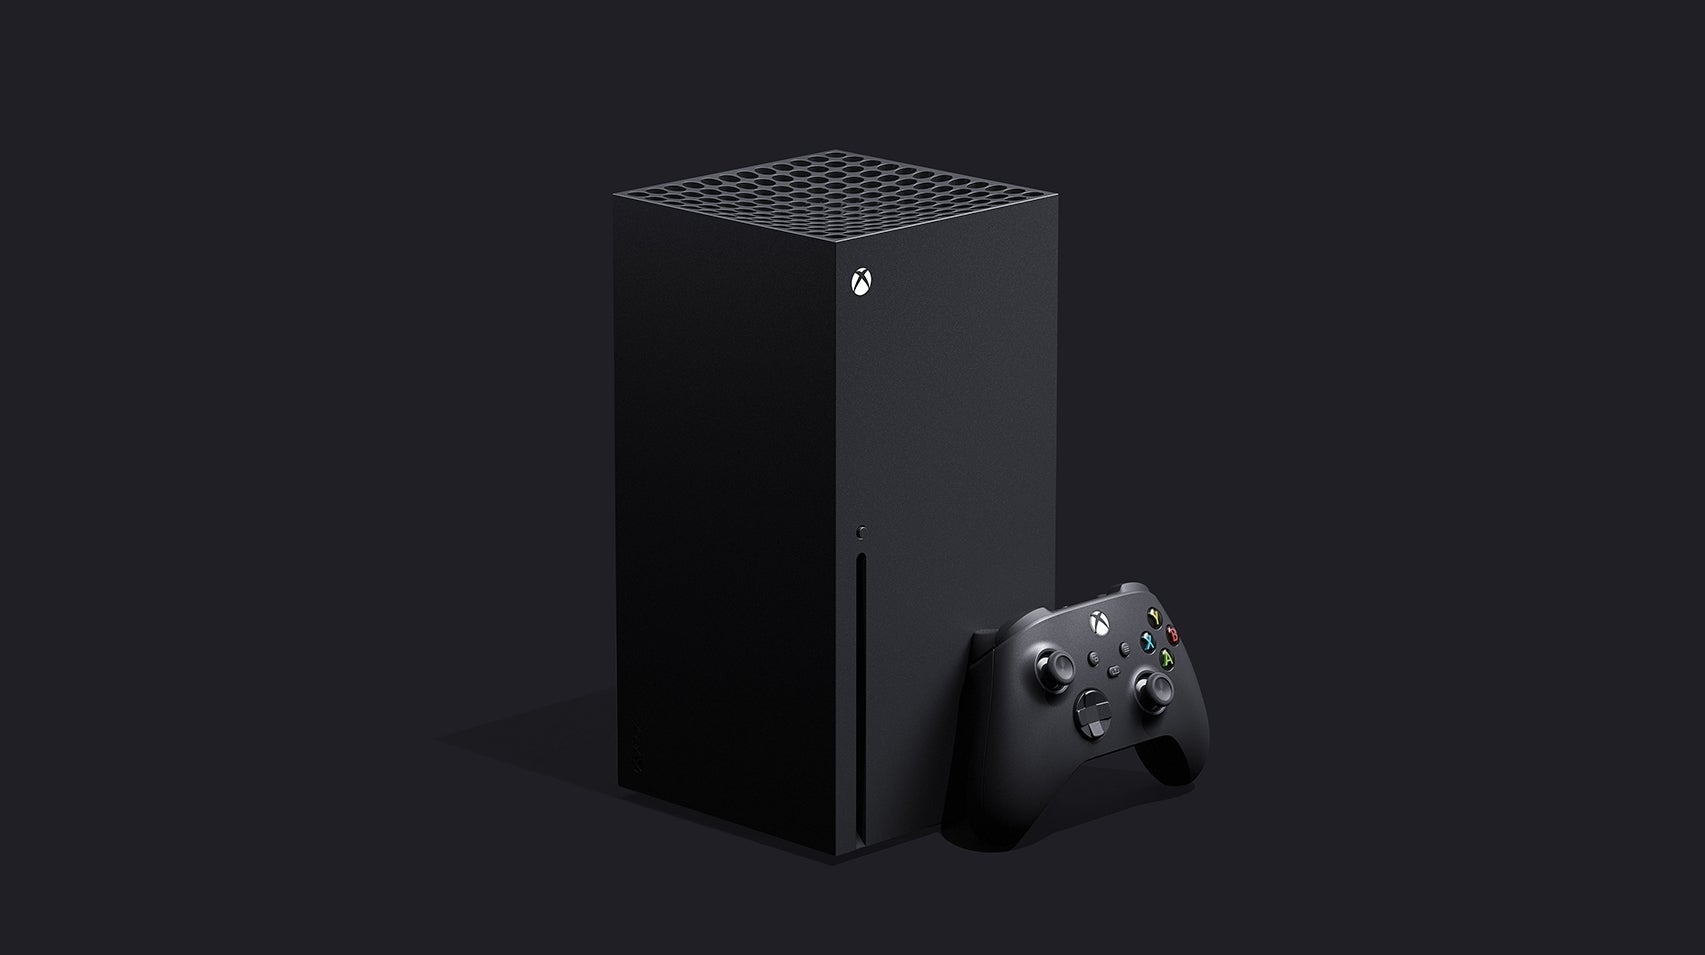 Bilder zu Xbox Series X: Microsoft nennt 12 Teraflops als Ziel und weitere technische Details